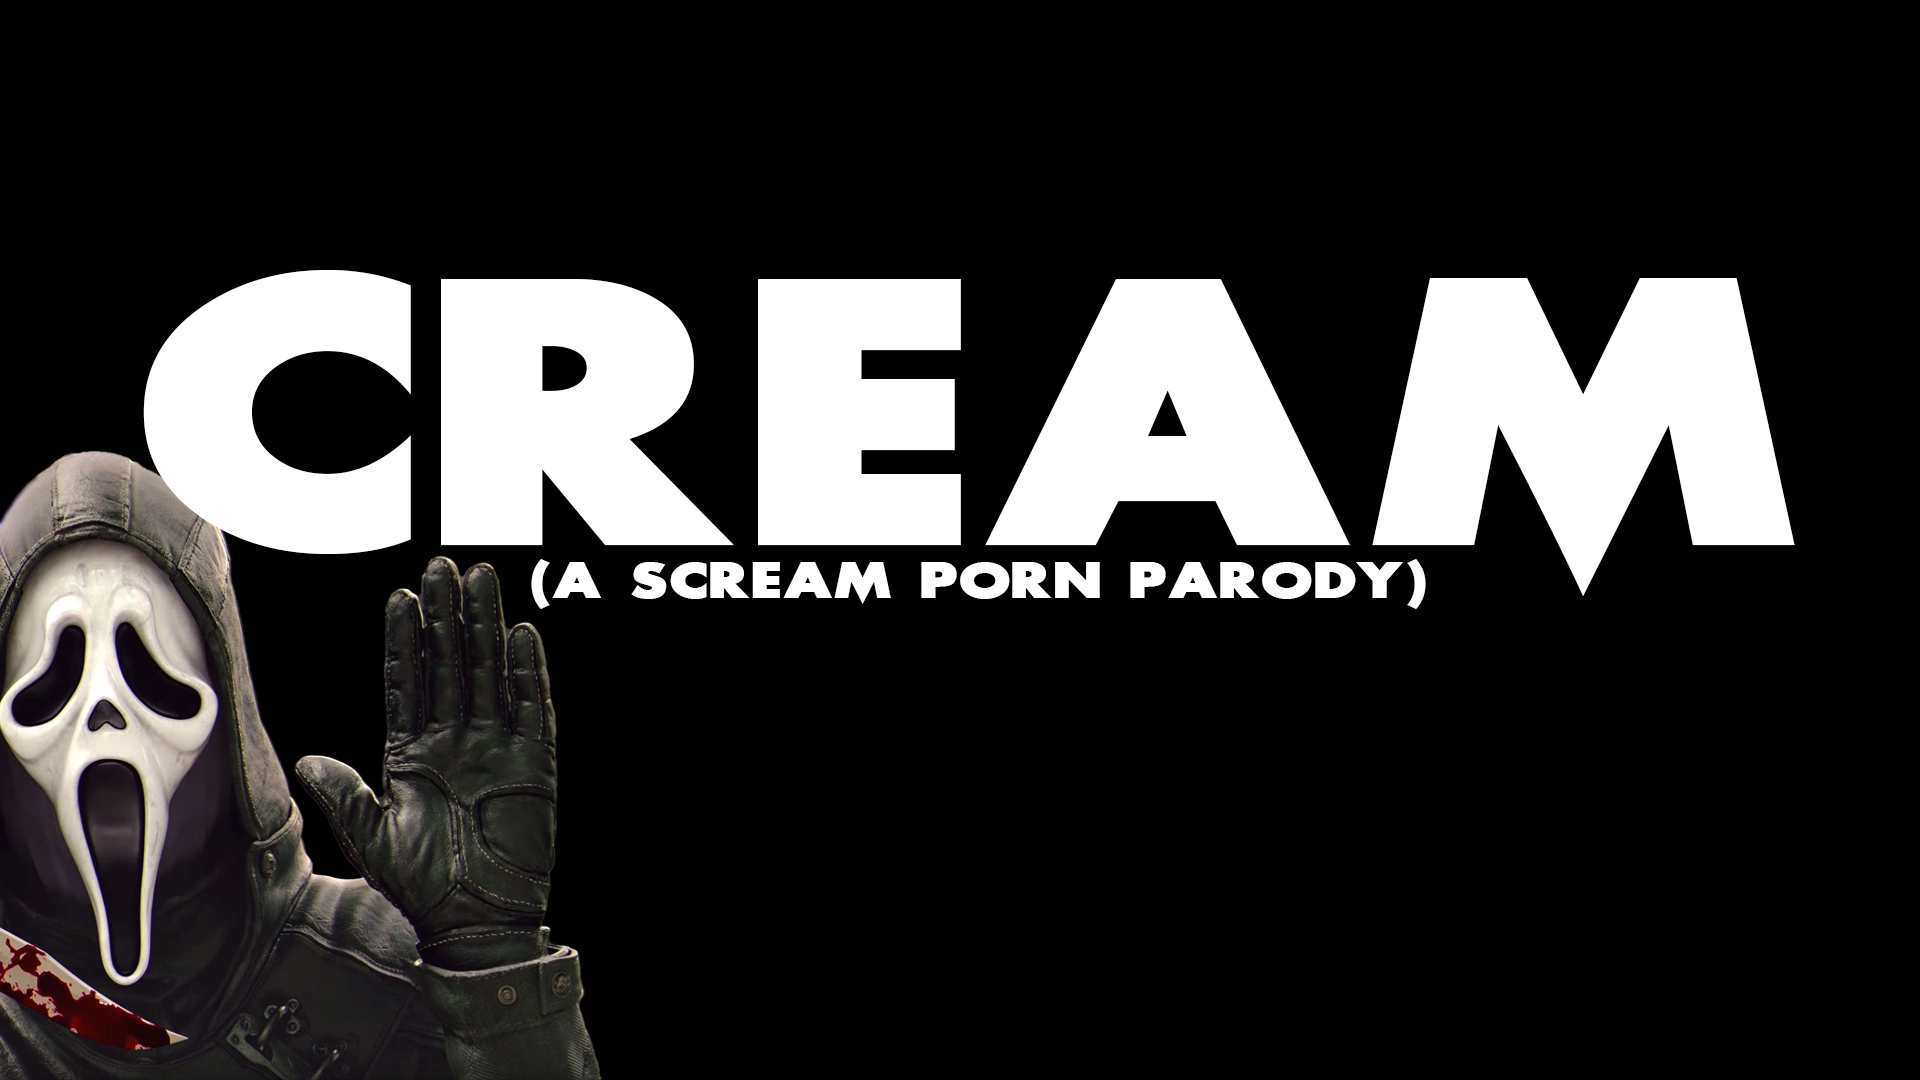 Cream - A Scream Porn Parody main image